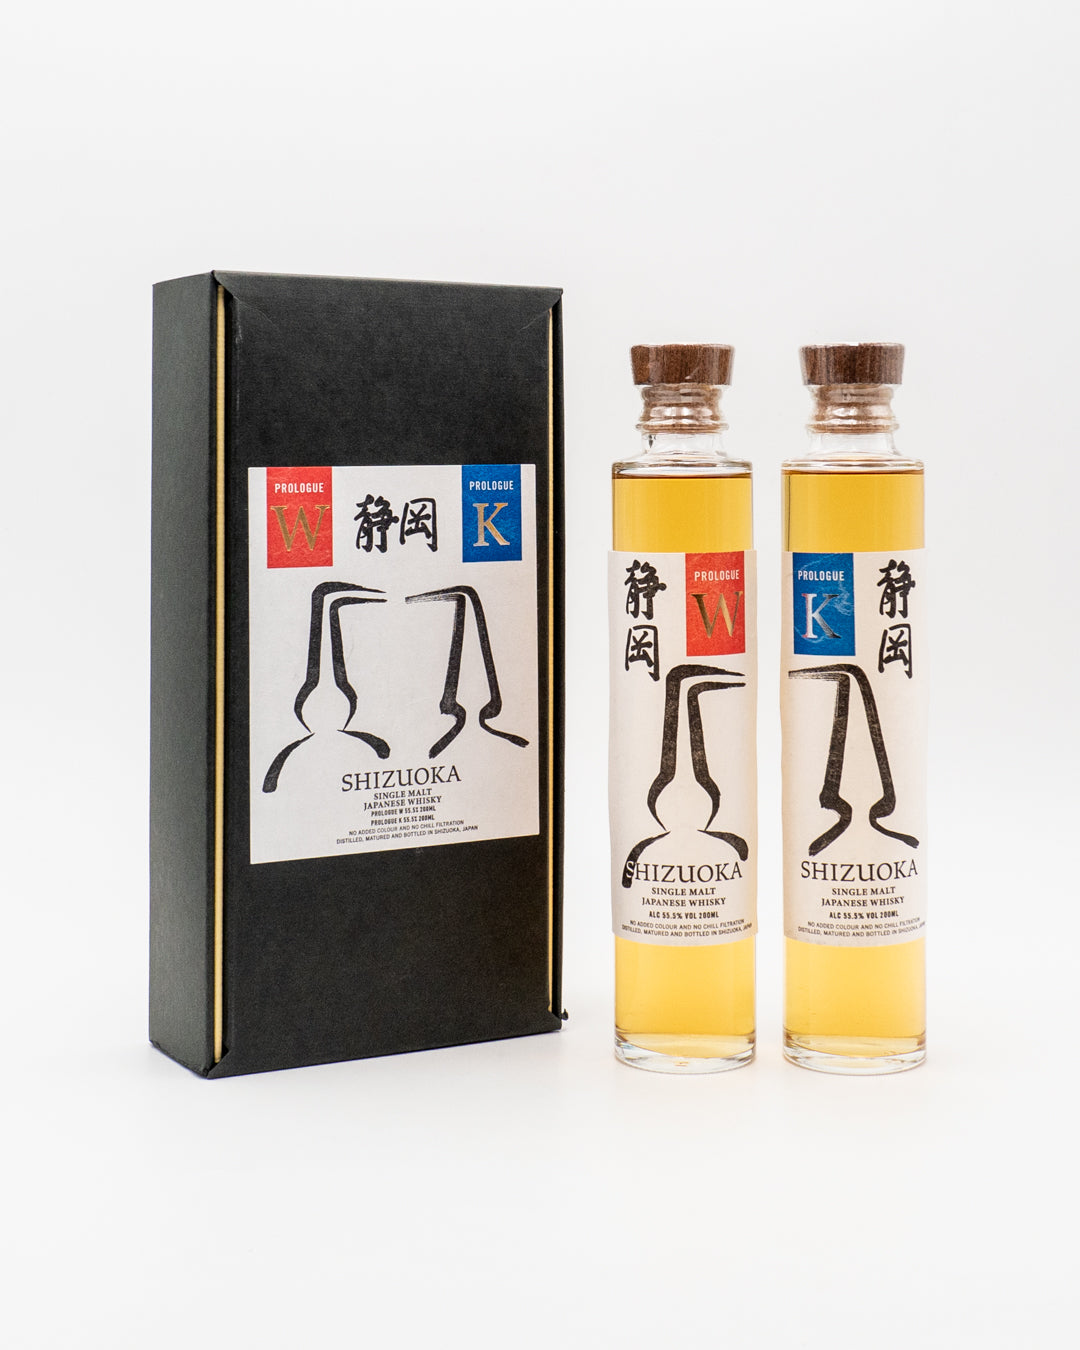 whisky-shizuoka-single-malt-prologue-k-w-shizuoka-distillery-55-5-400ml